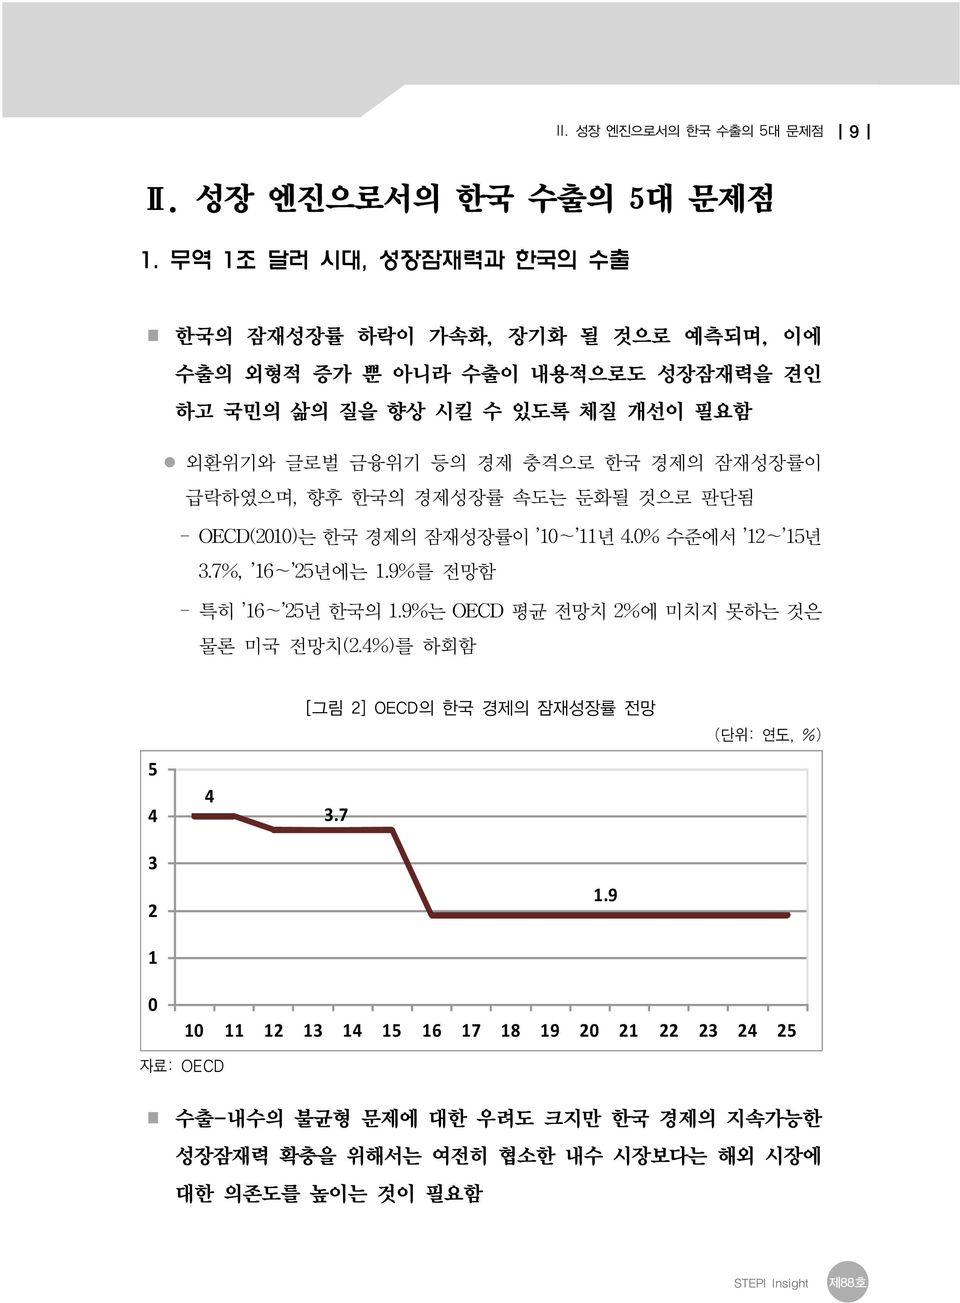 한국 경제의 잠재성장률이 급락하였으며, 향후 한국의 경제성장률 속도는 둔화될 것으로 판단됨 - OECD(2010)는 한국 경제의 잠재성장률이 10~ 11년 4.0% 수준에서 12~ 15년 3.7%, 16~ 25년에는 1.9%를 전망함 - 특히 16~ 25년 한국의 1.